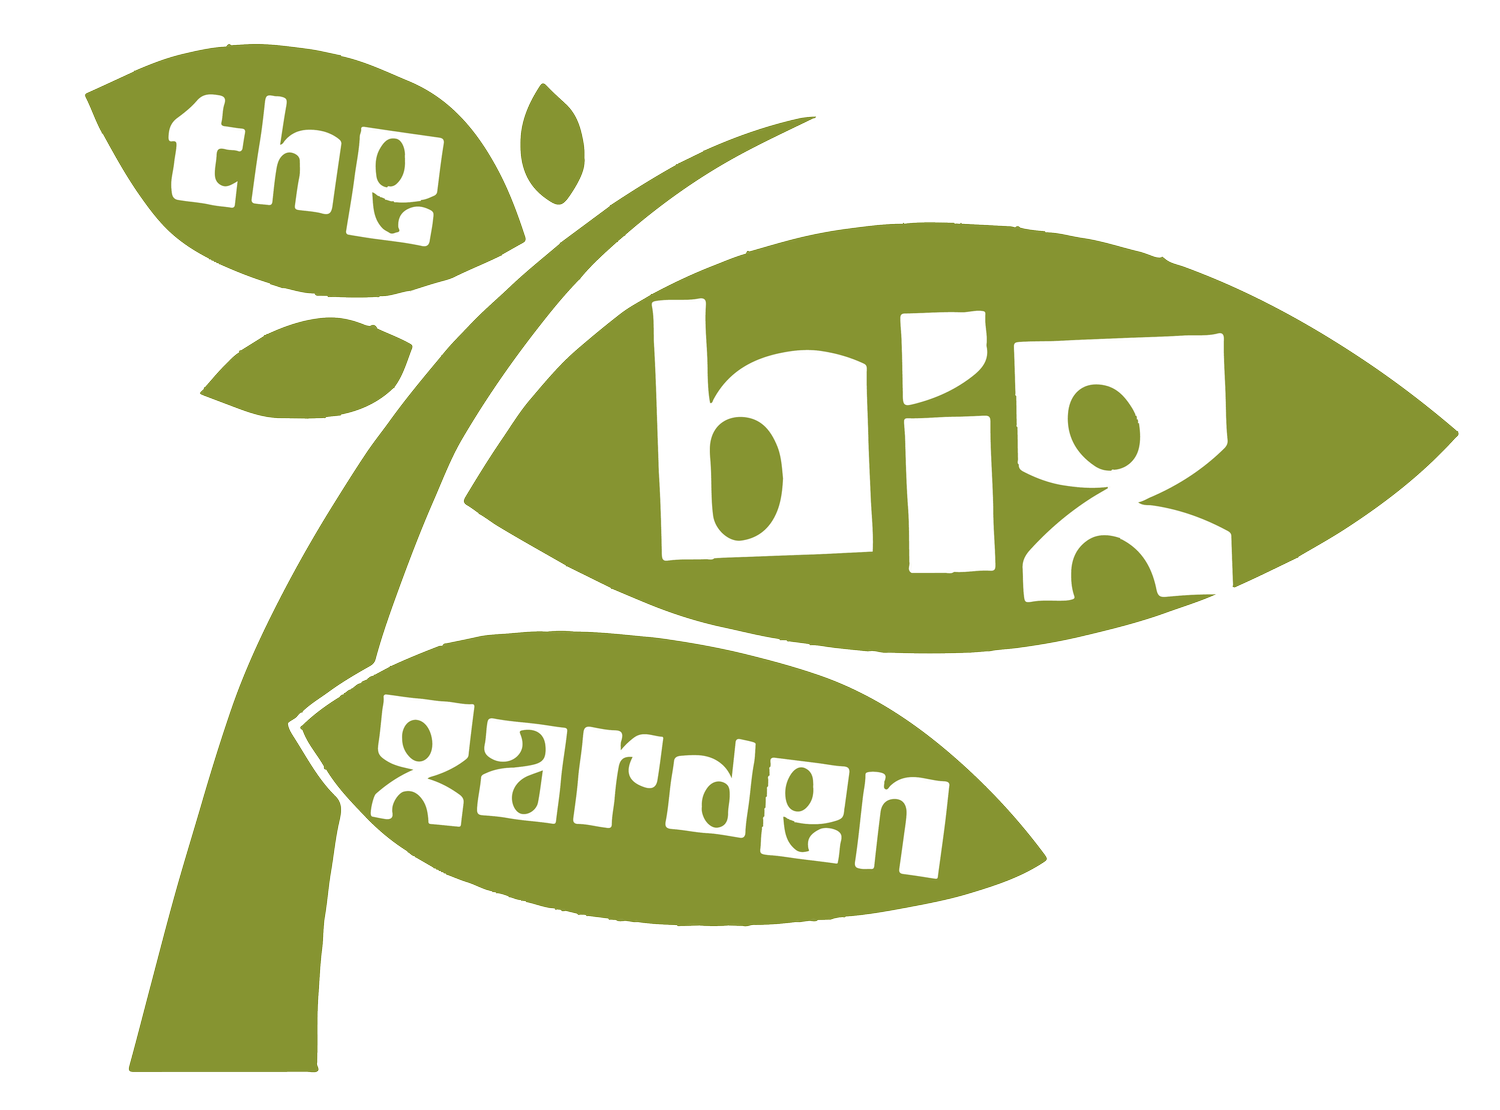 The Big Garden